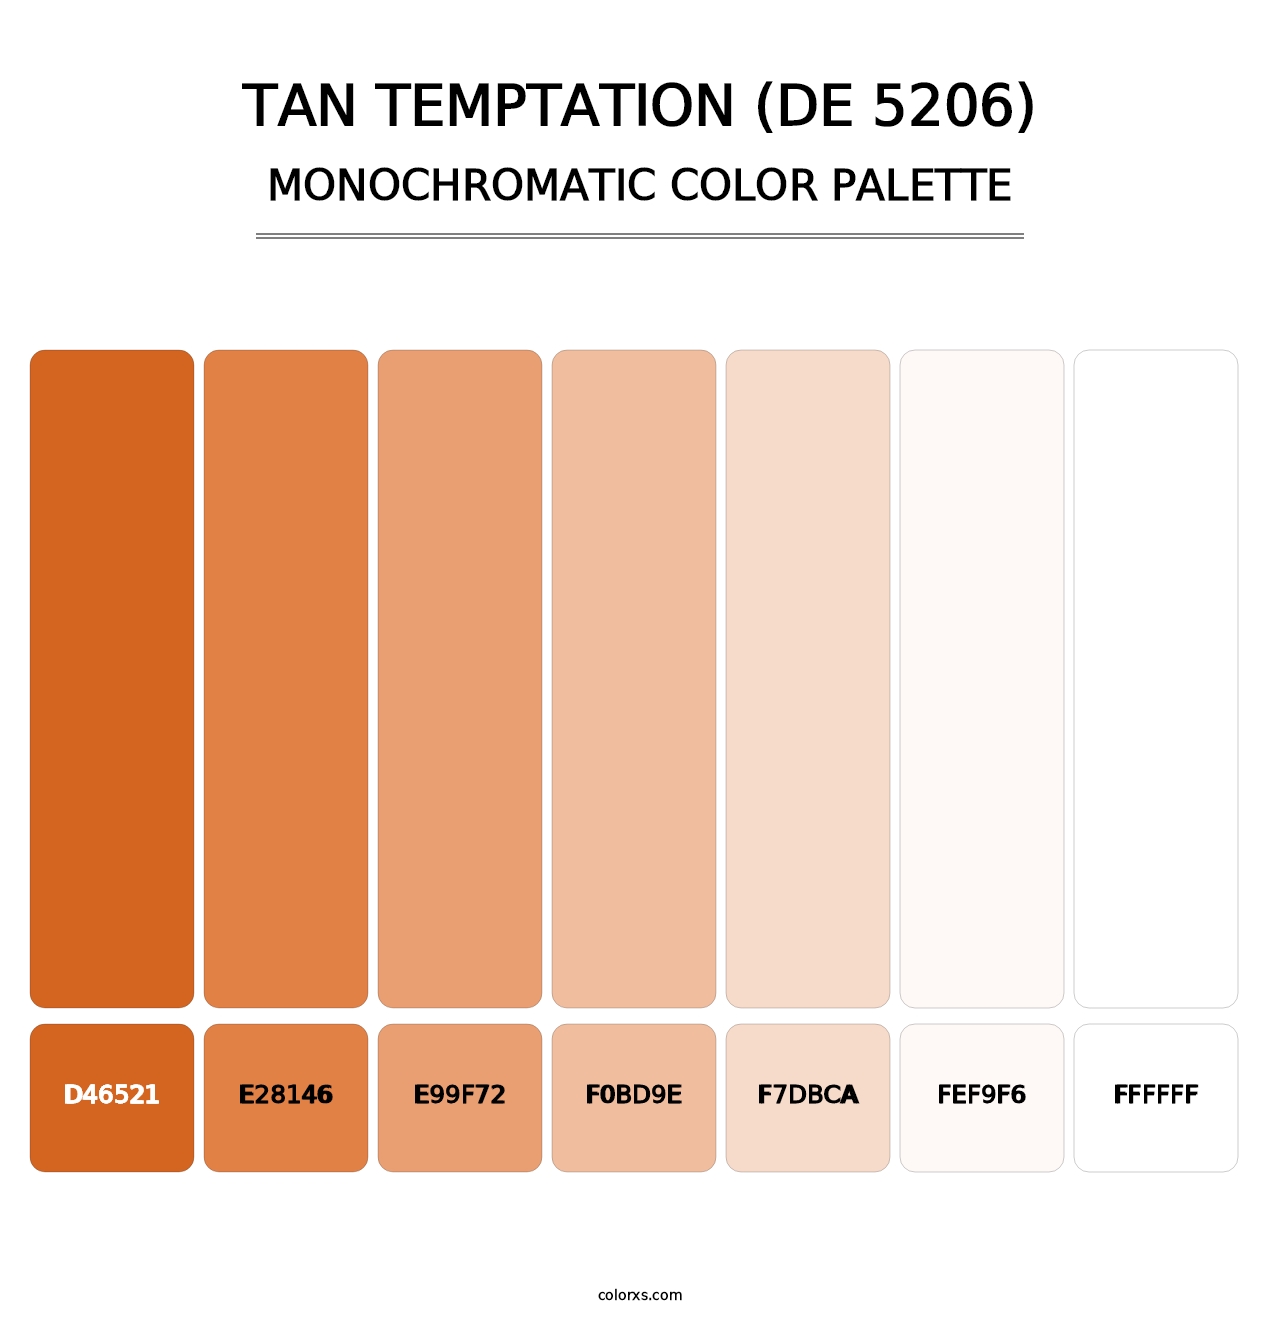 Tan Temptation (DE 5206) - Monochromatic Color Palette